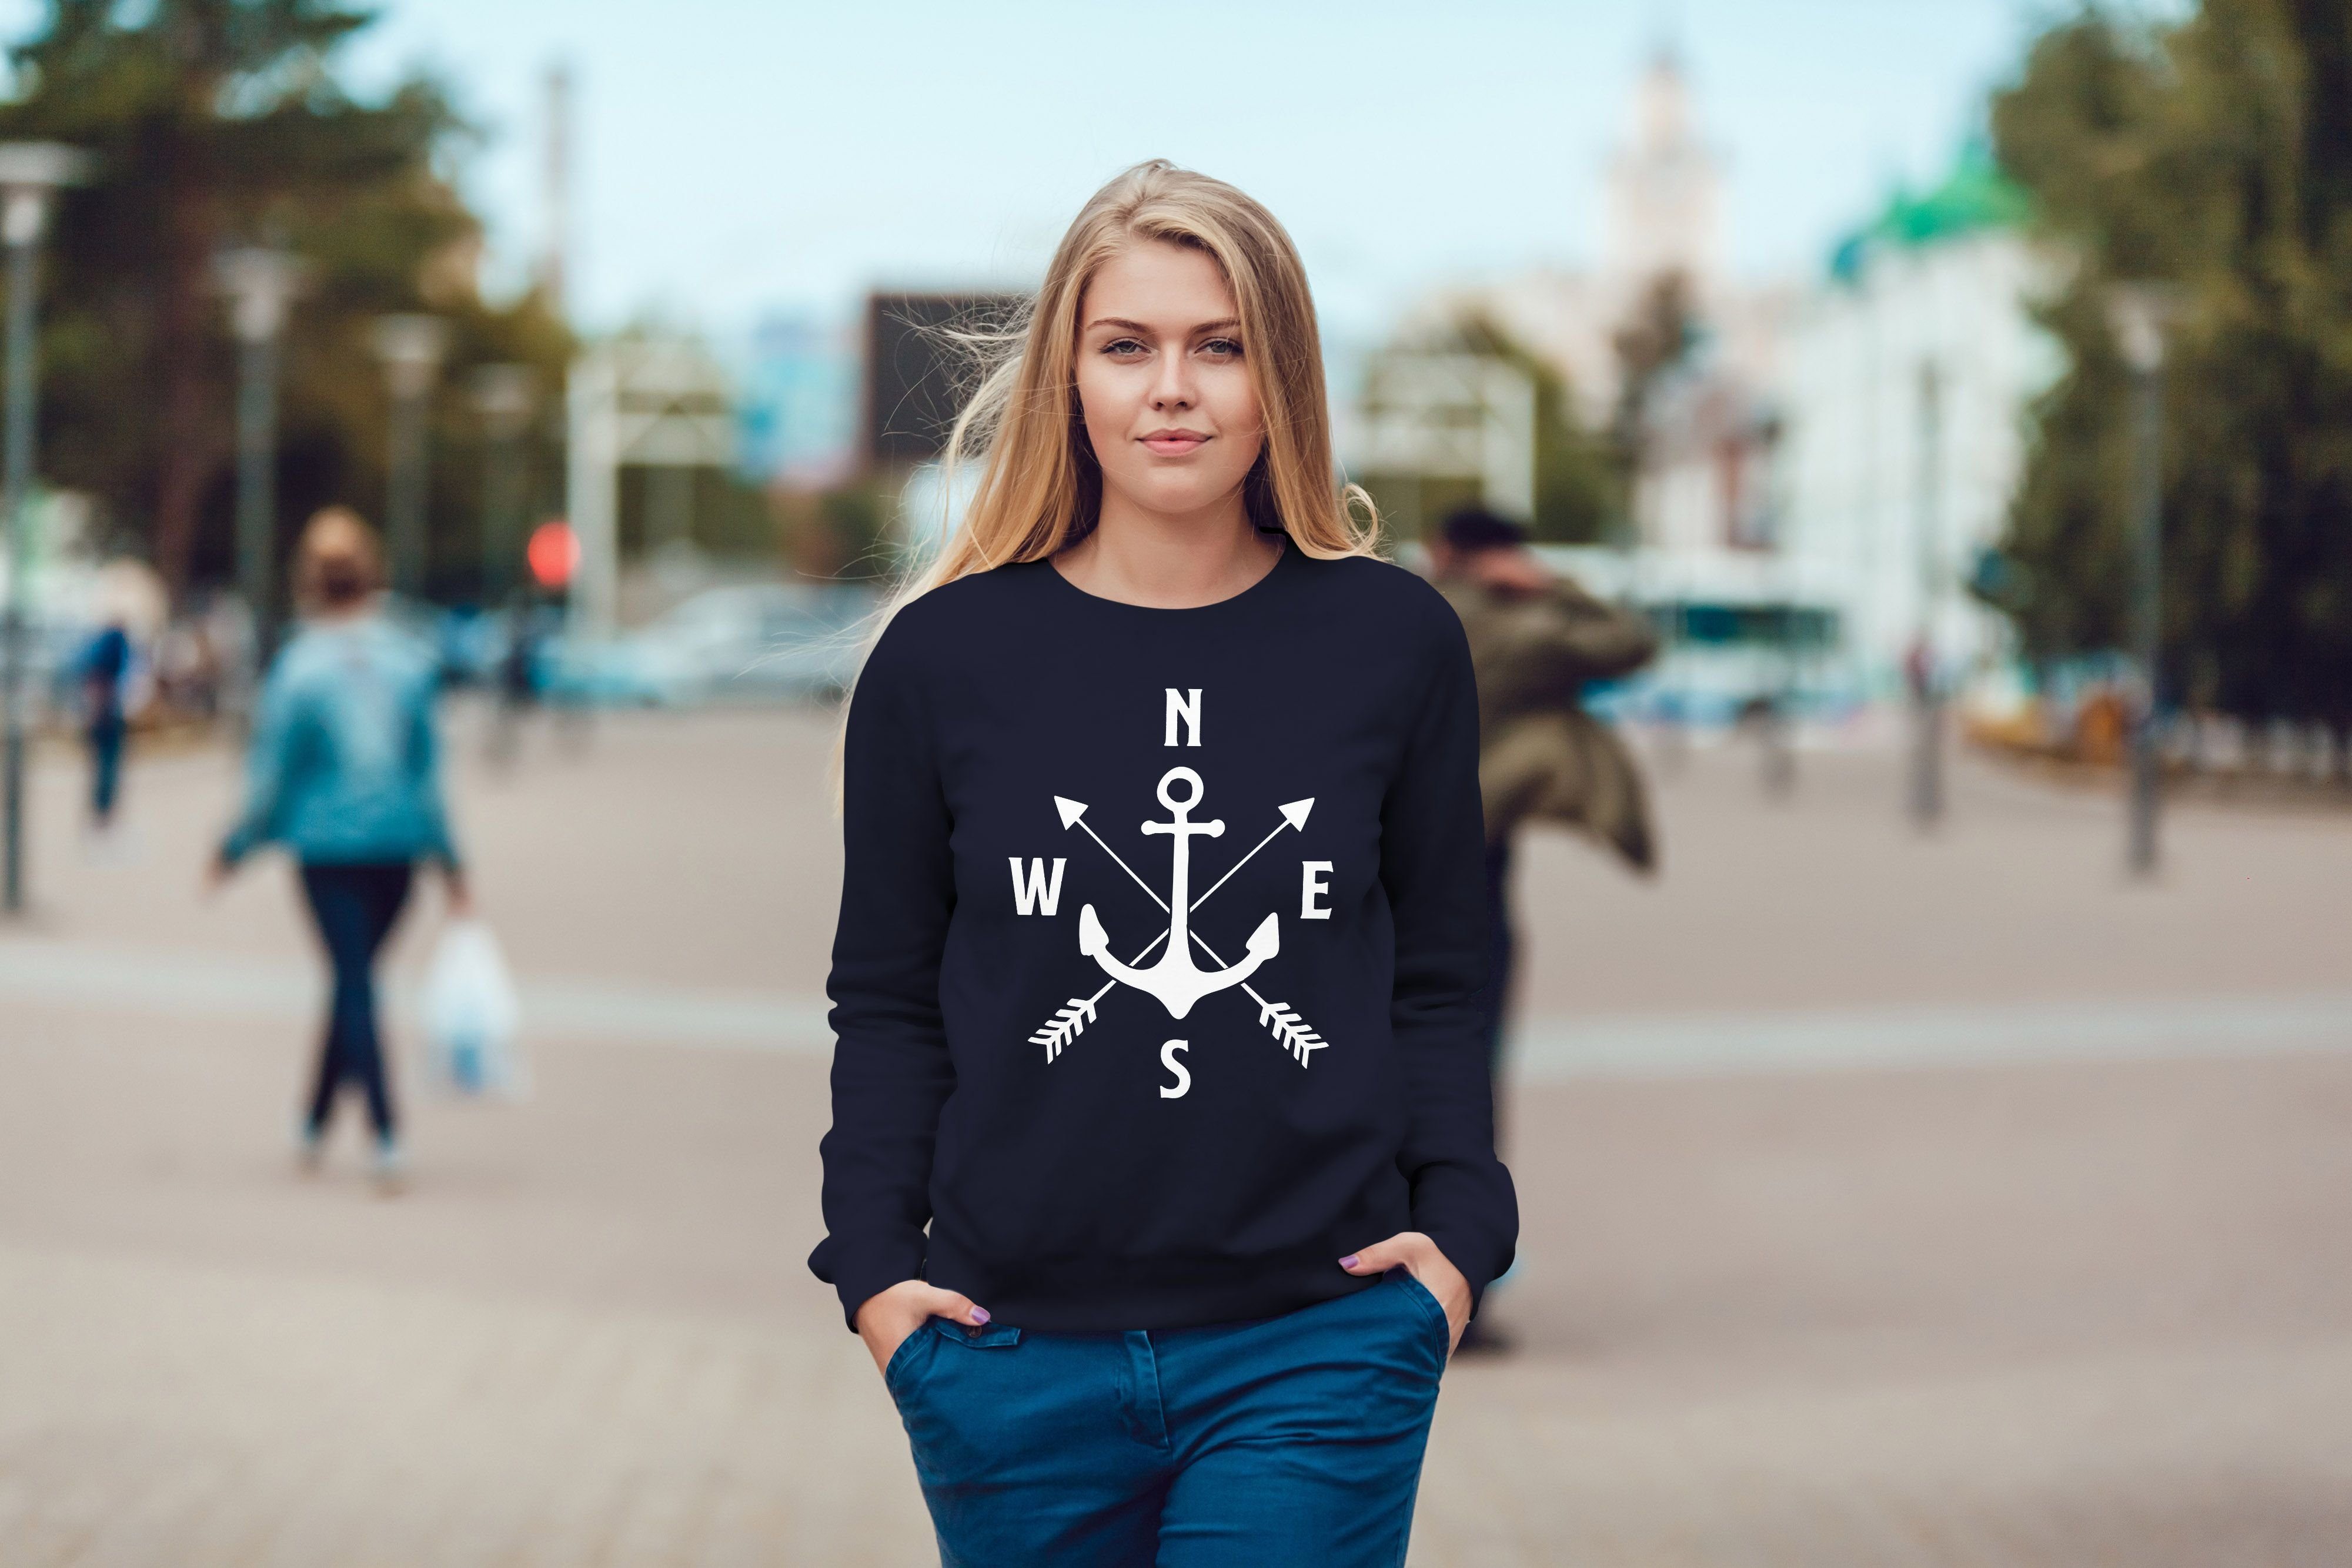 MoonWorks Sweatshirt Sweatshirt Damen Aufdruck Motiv Sweater Rundhals-Pullover Moonworks® Anker Kompass navy Pulli Pfeile